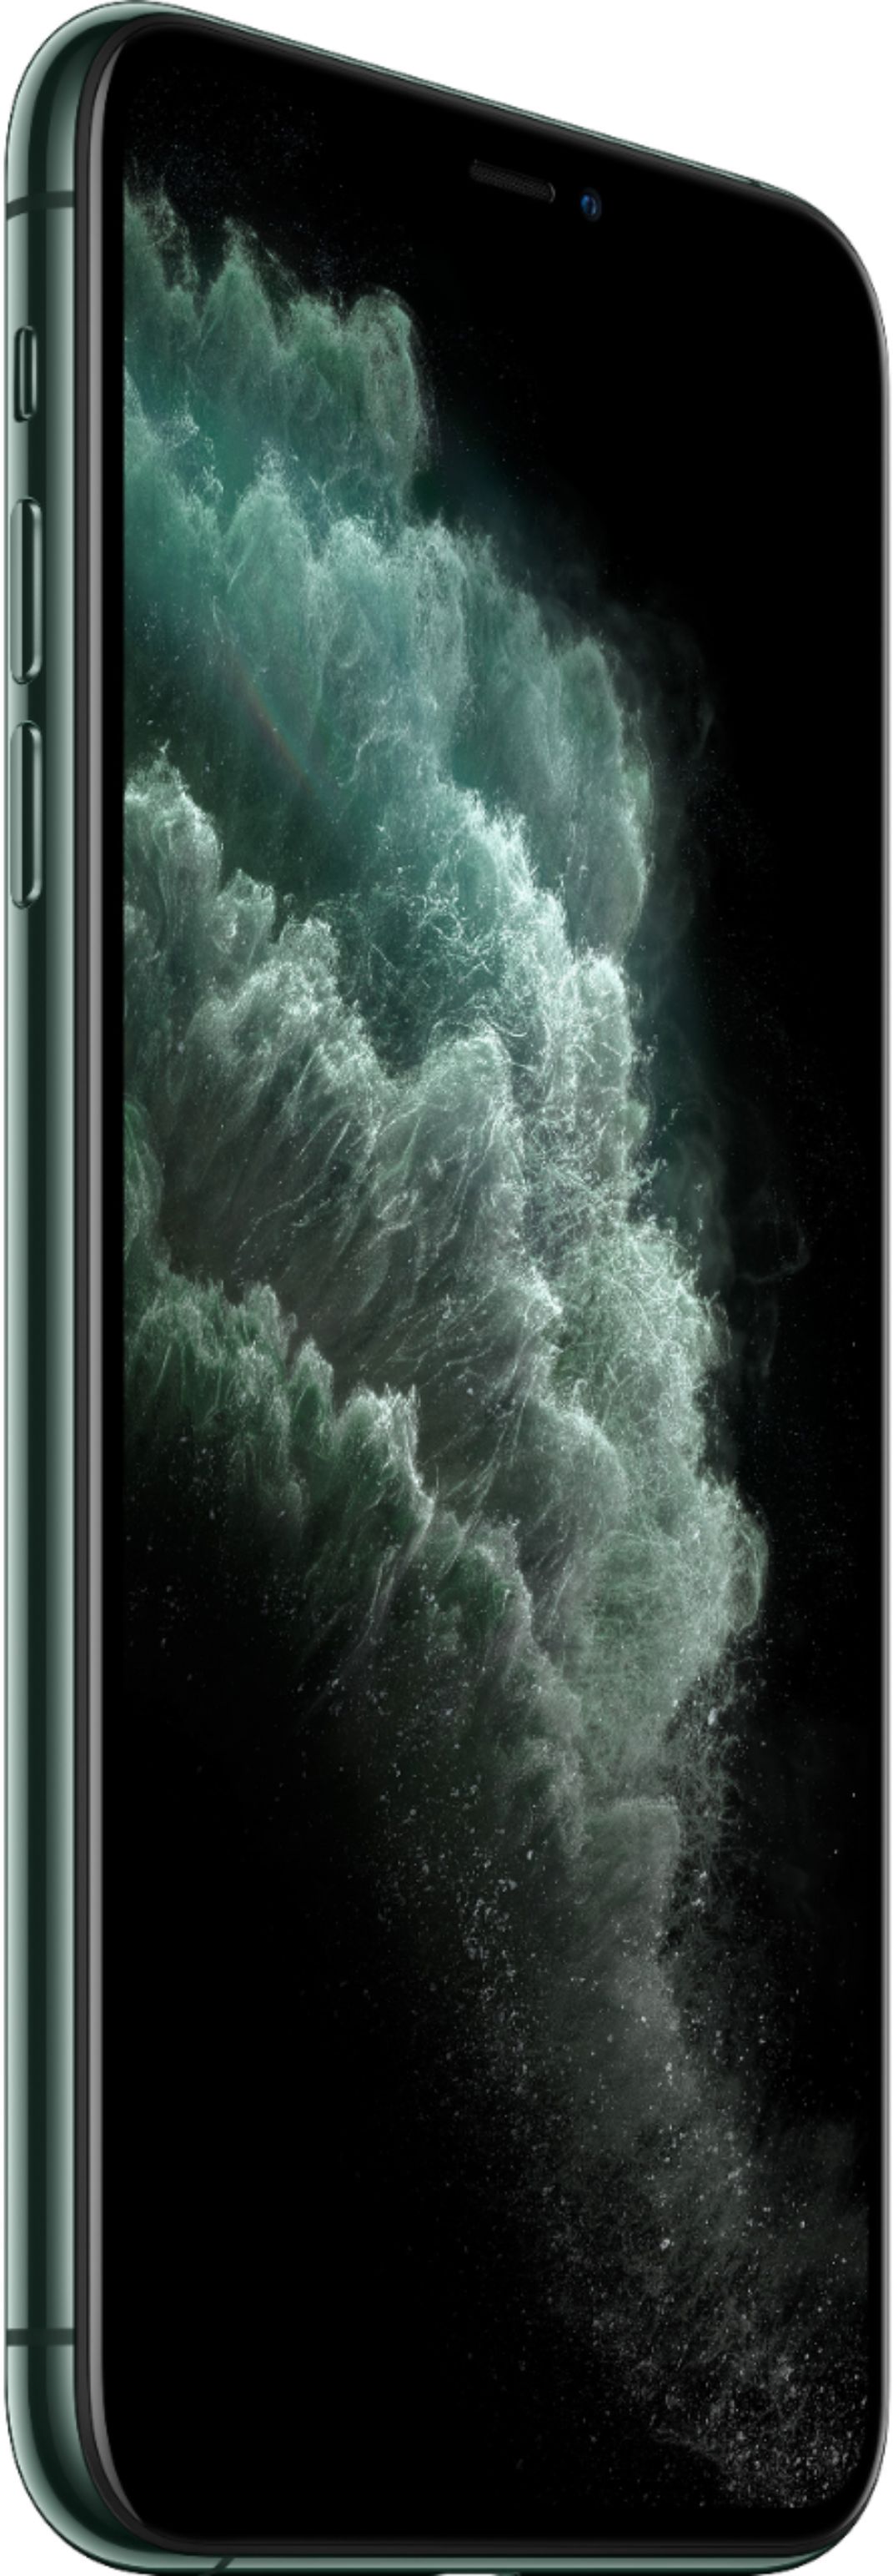 スマートフォン/携帯電話 スマートフォン本体 Best Buy: Apple iPhone 11 Pro Max 64GB Midnight Green (Sprint 